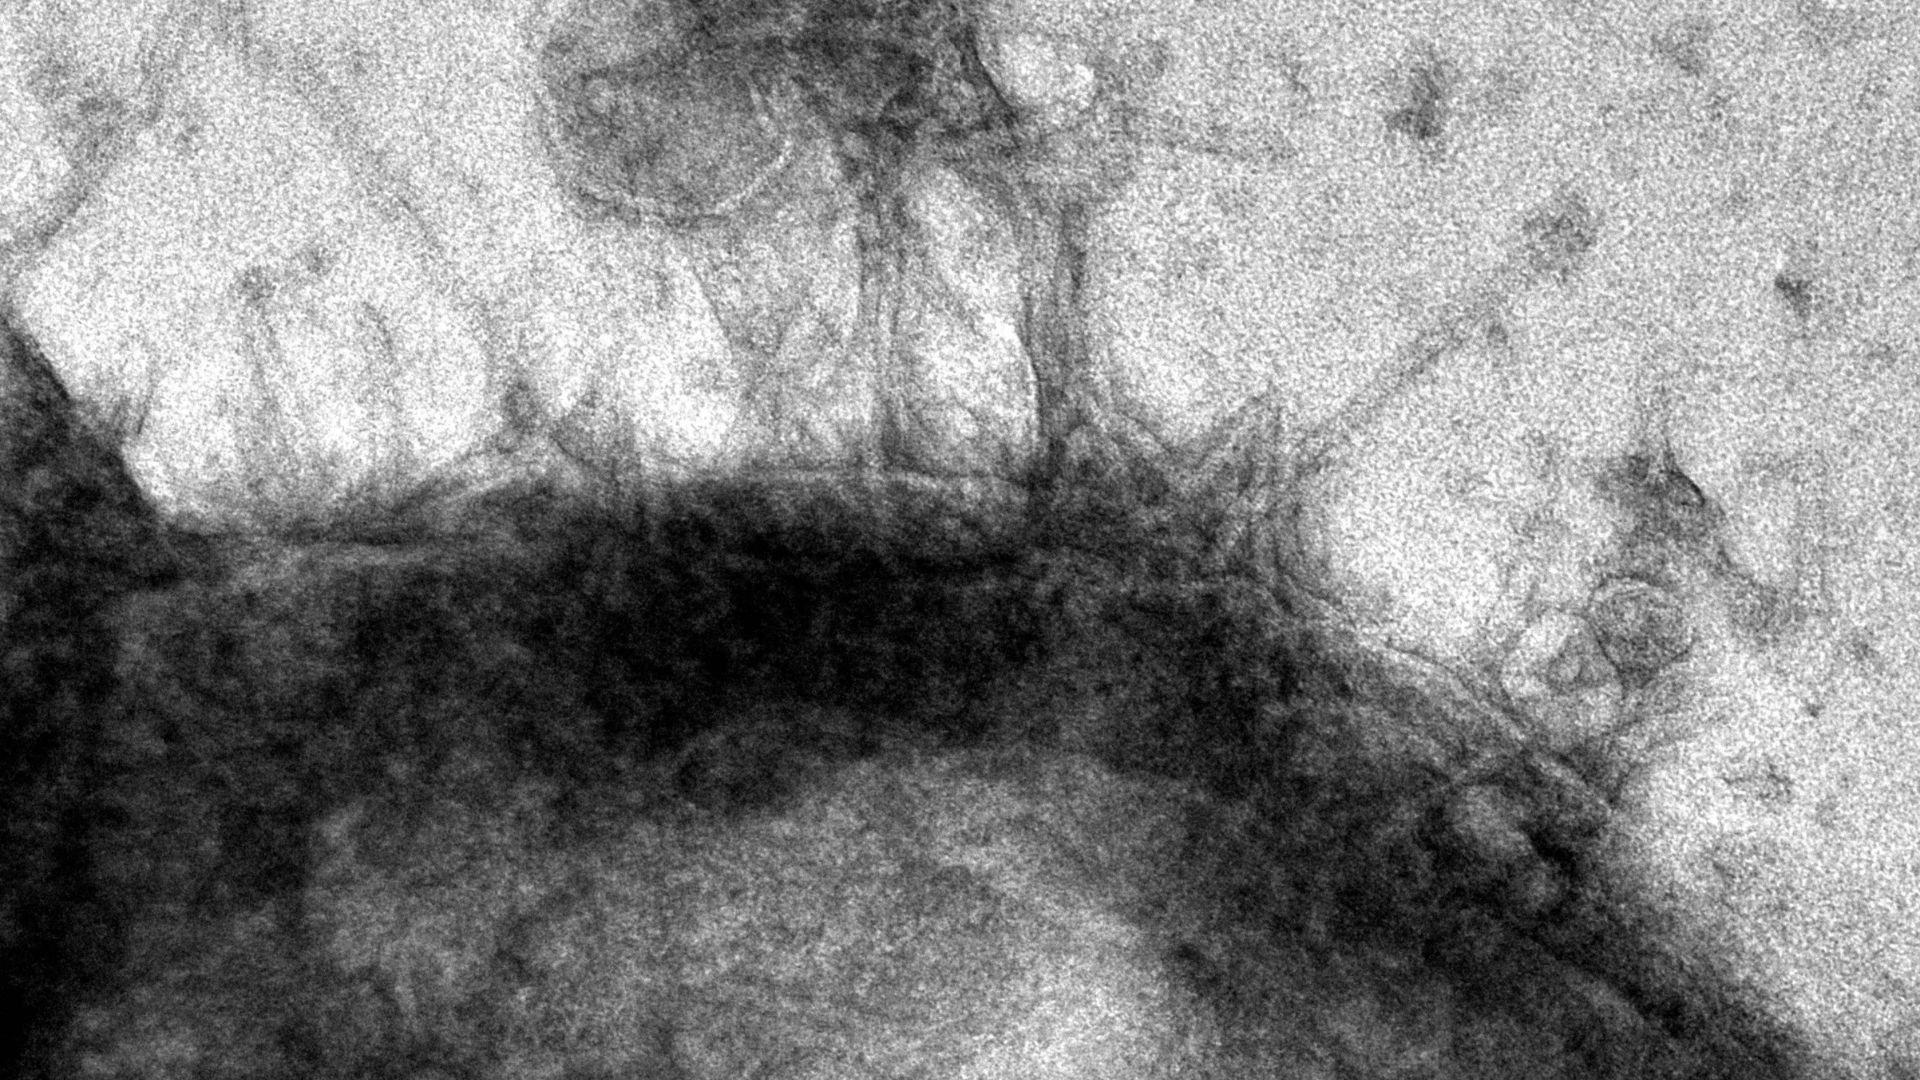 Image de microscopie en noir et blanc montrant des protéines en forme de tube se fixant à la surface d'une cellule cancéreuse